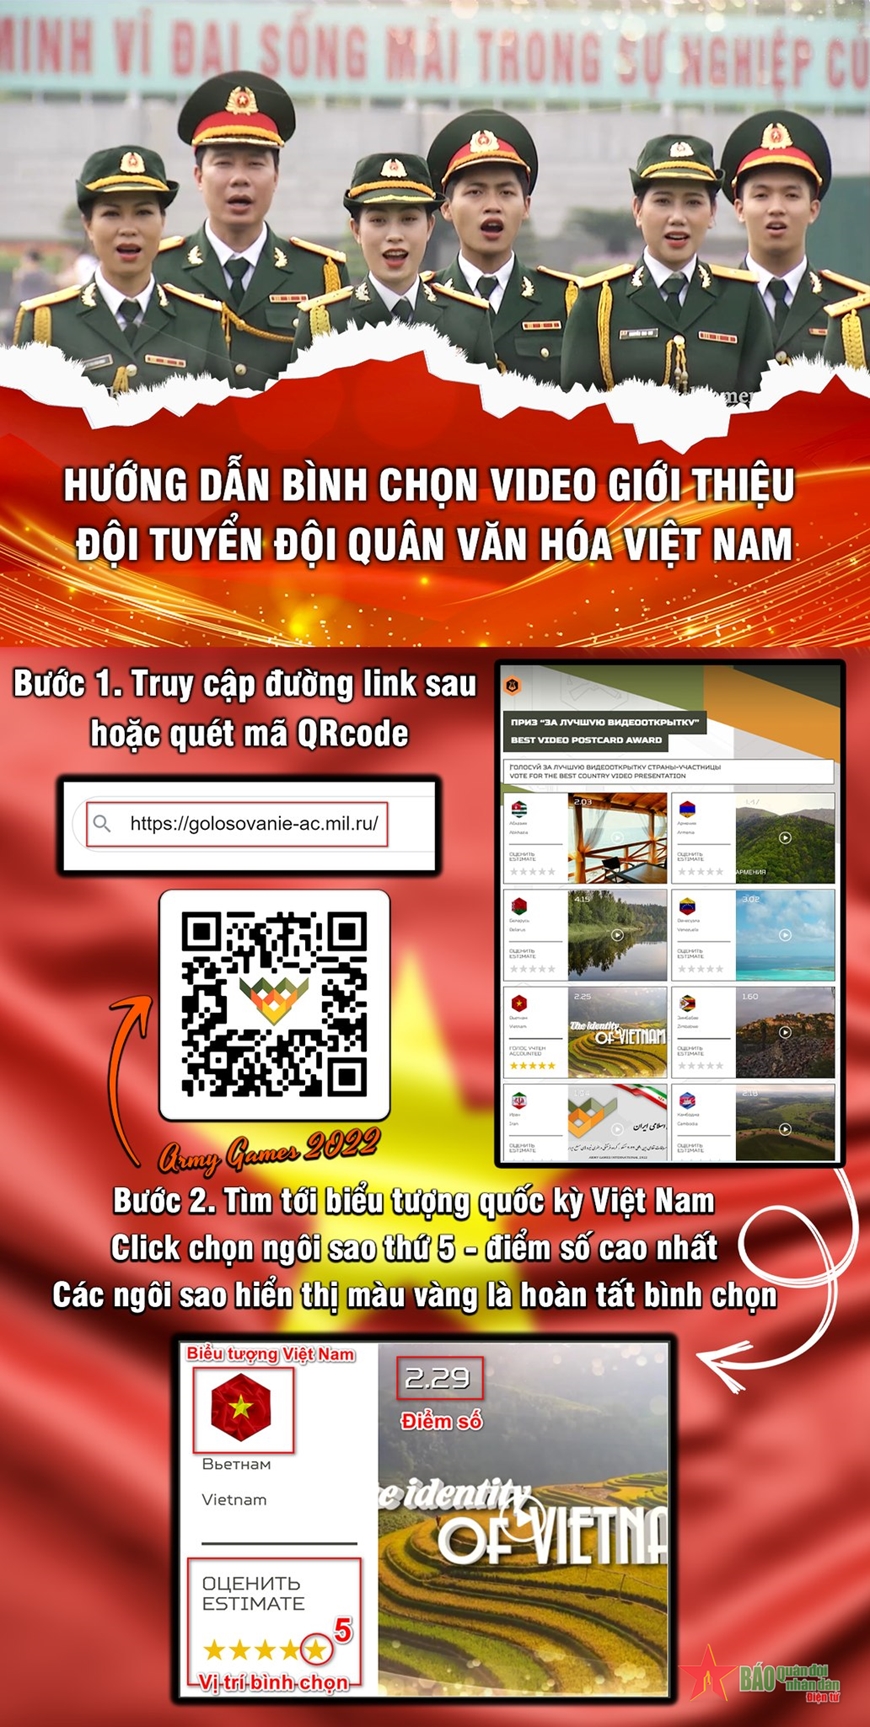 Bình chọn VIDEO giới thiệu “Đội quân Văn hóa”